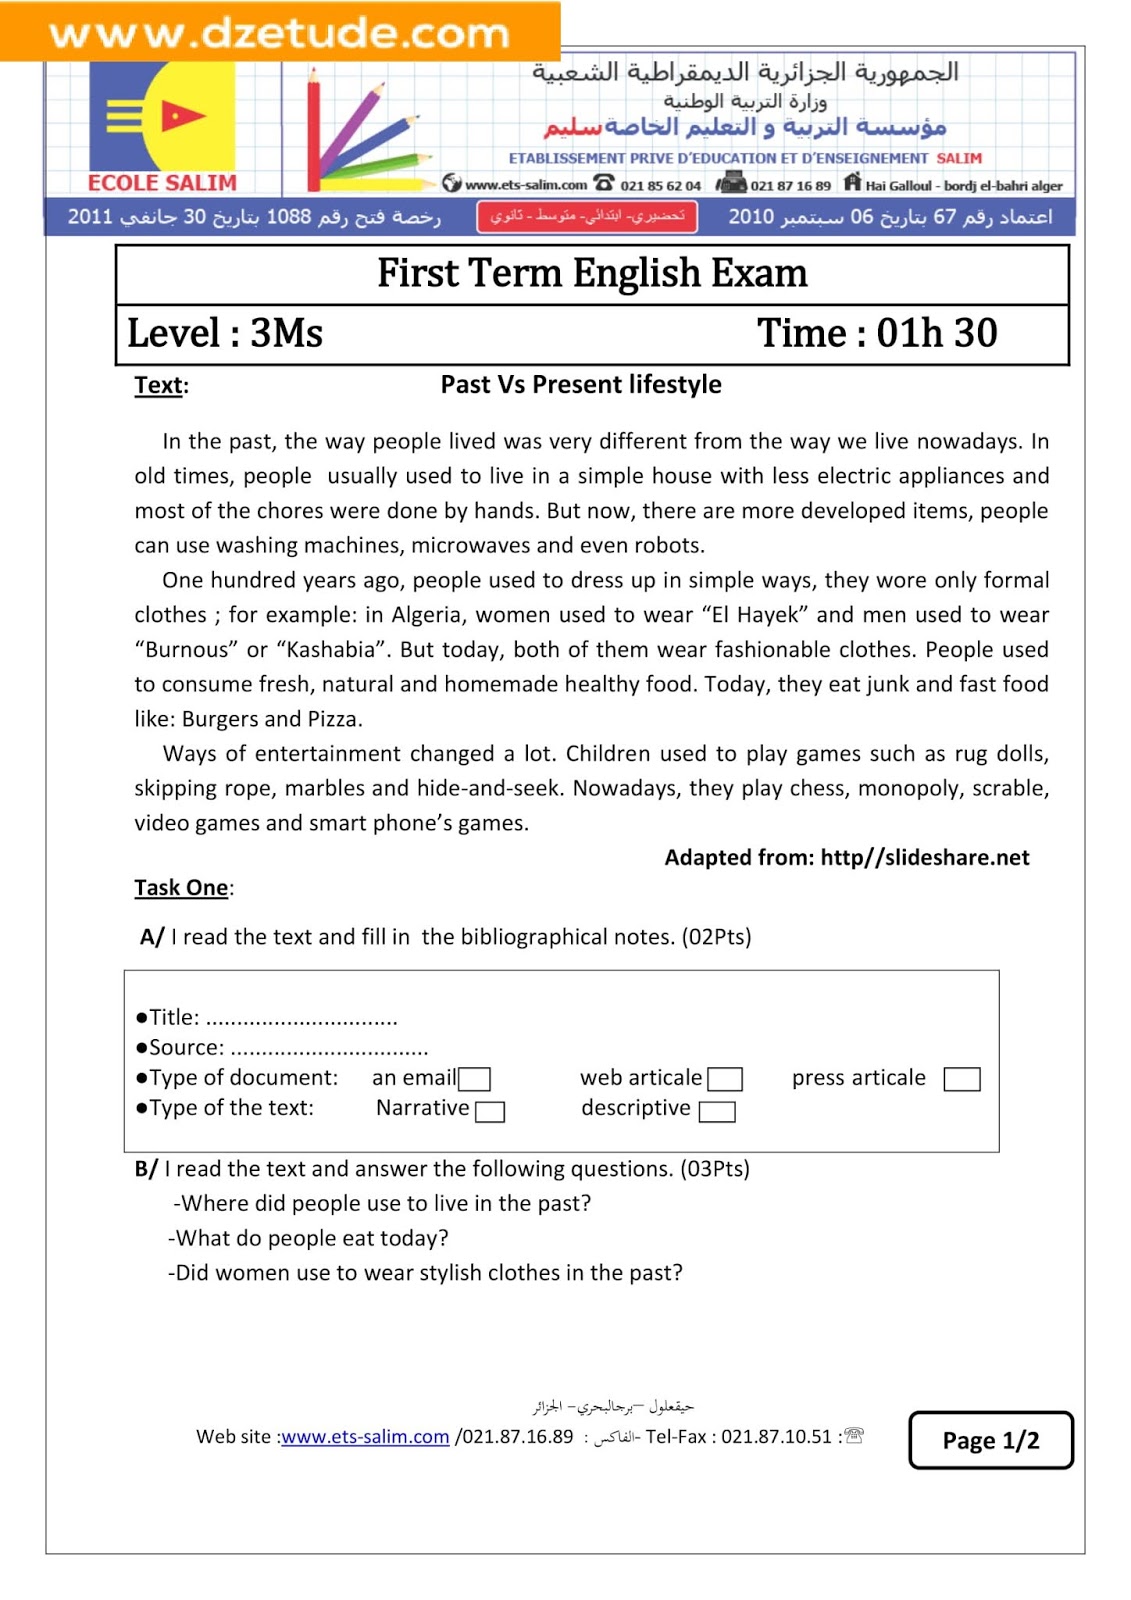 إختبار الانجليزية الفصل الأول للسنة الثالثة متوسط - الجيل الثاني نموذج 10